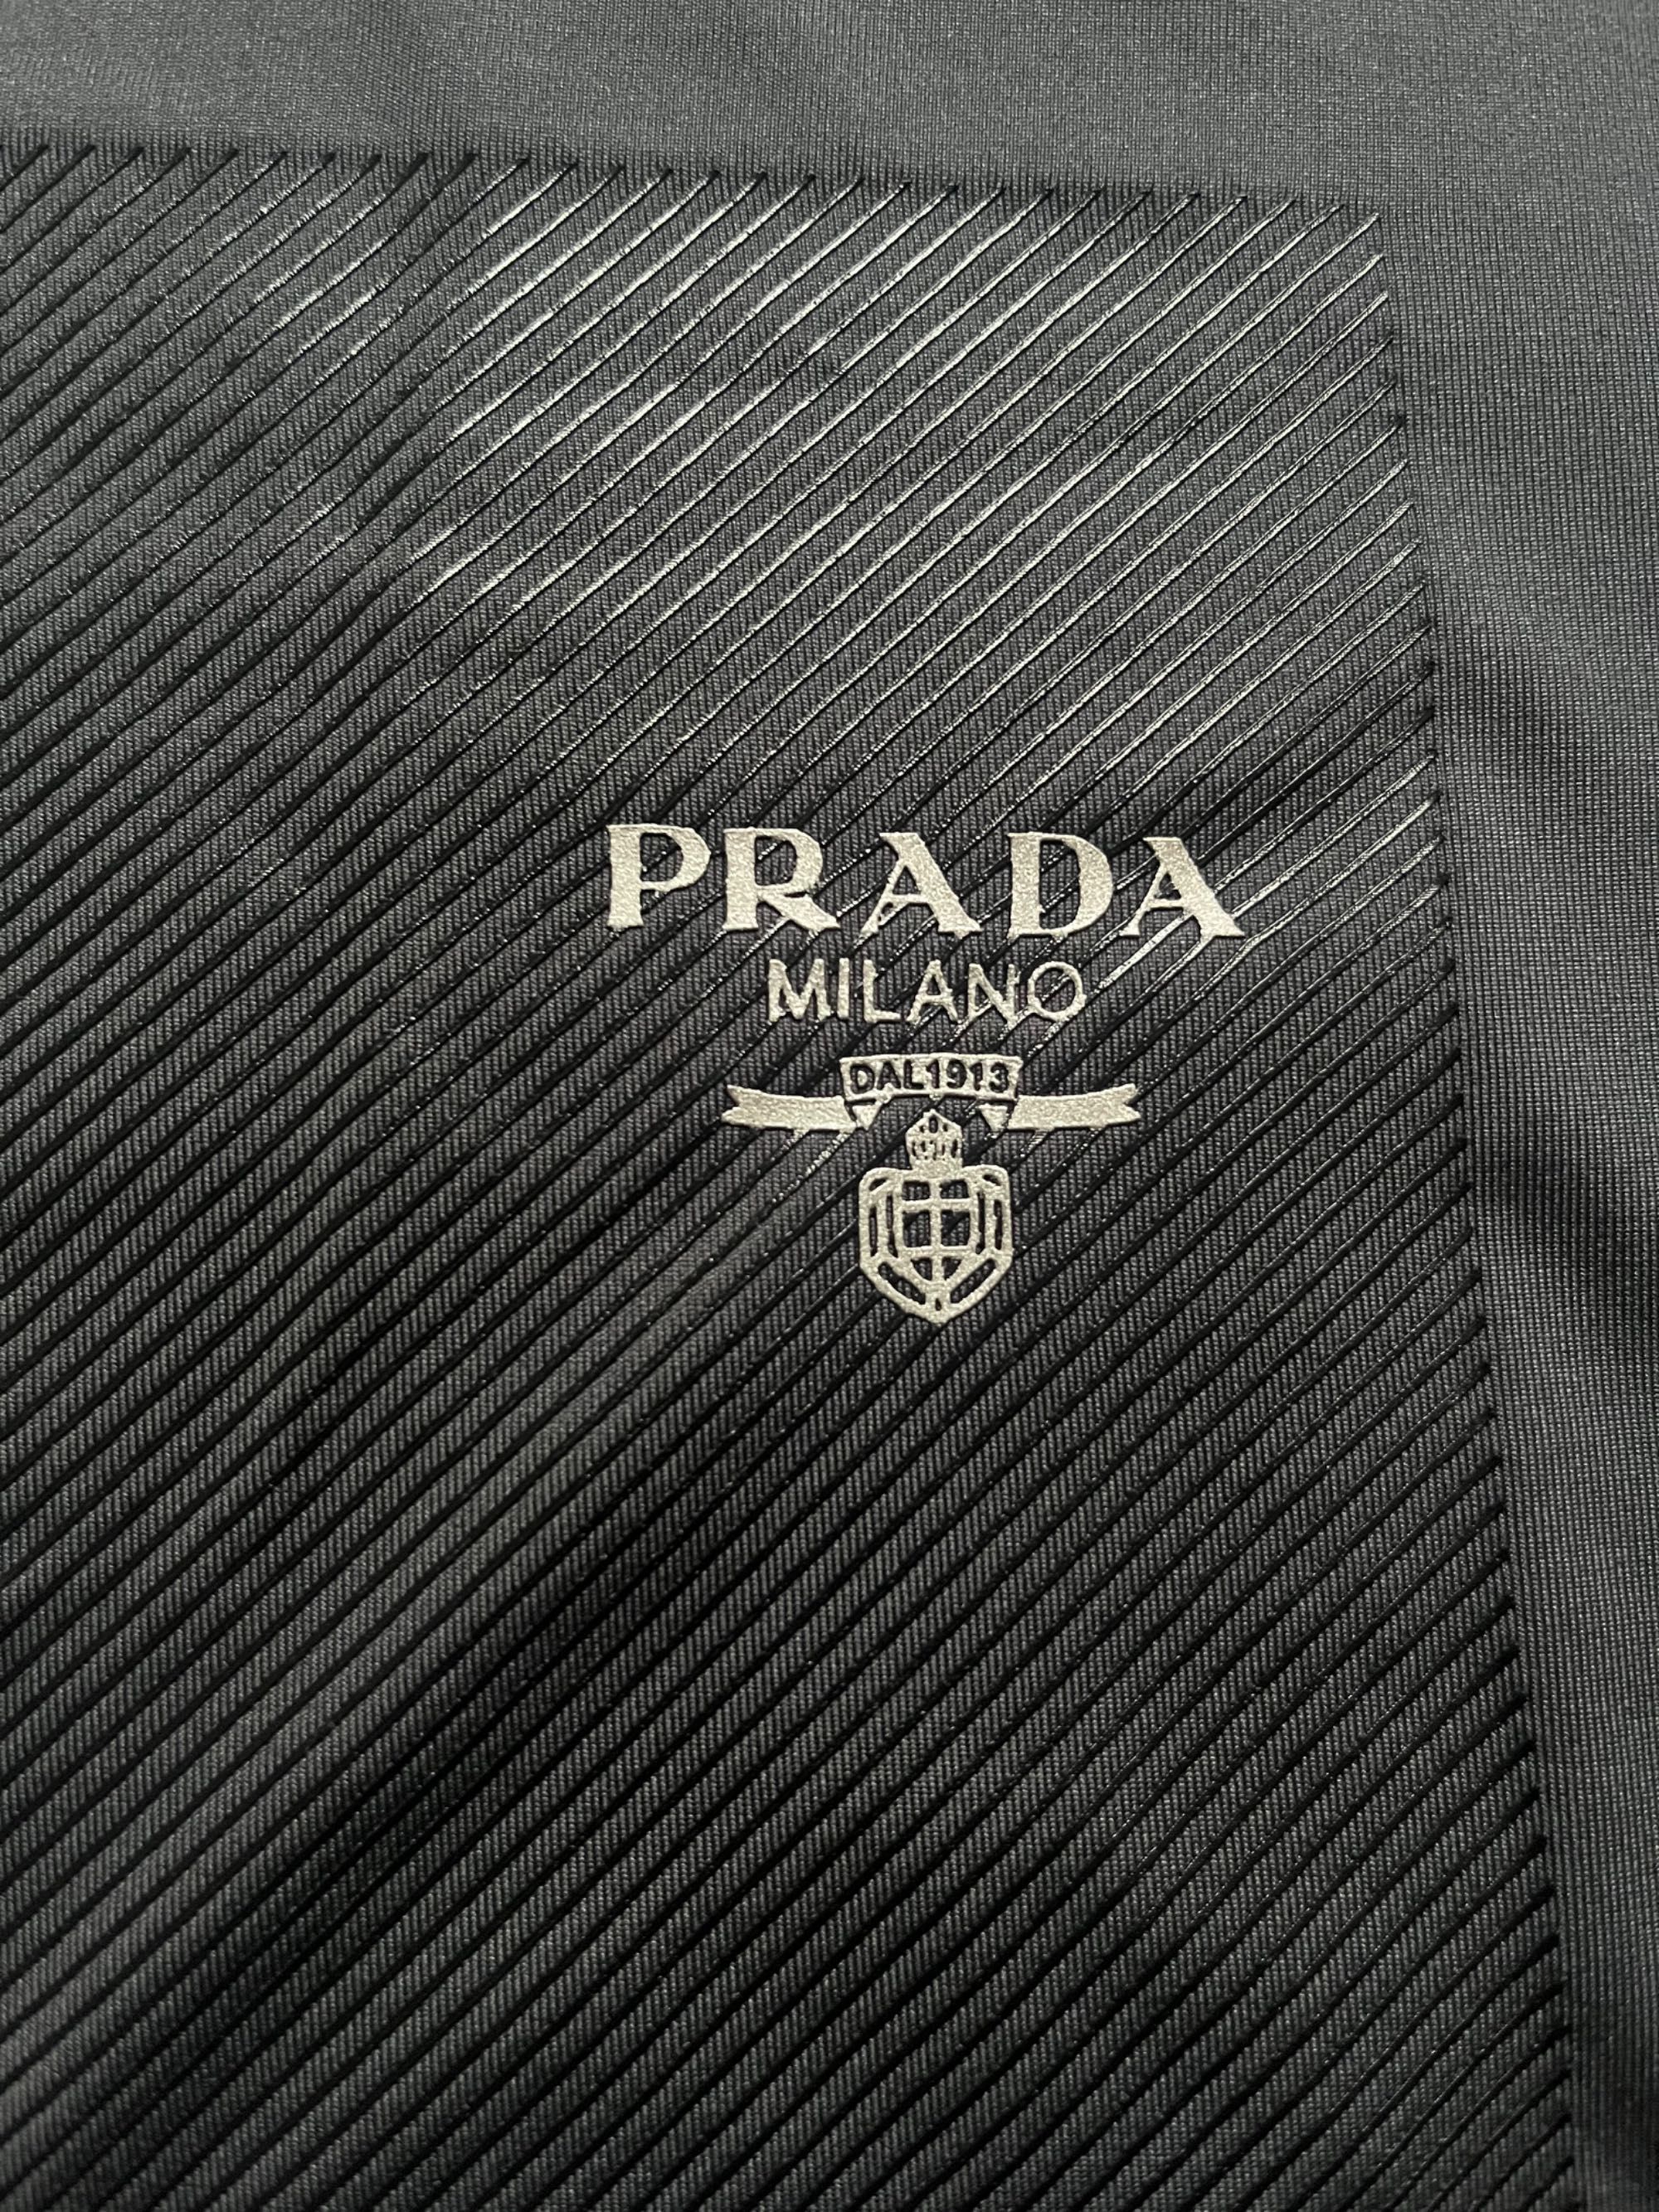 Koszulka Prada         .